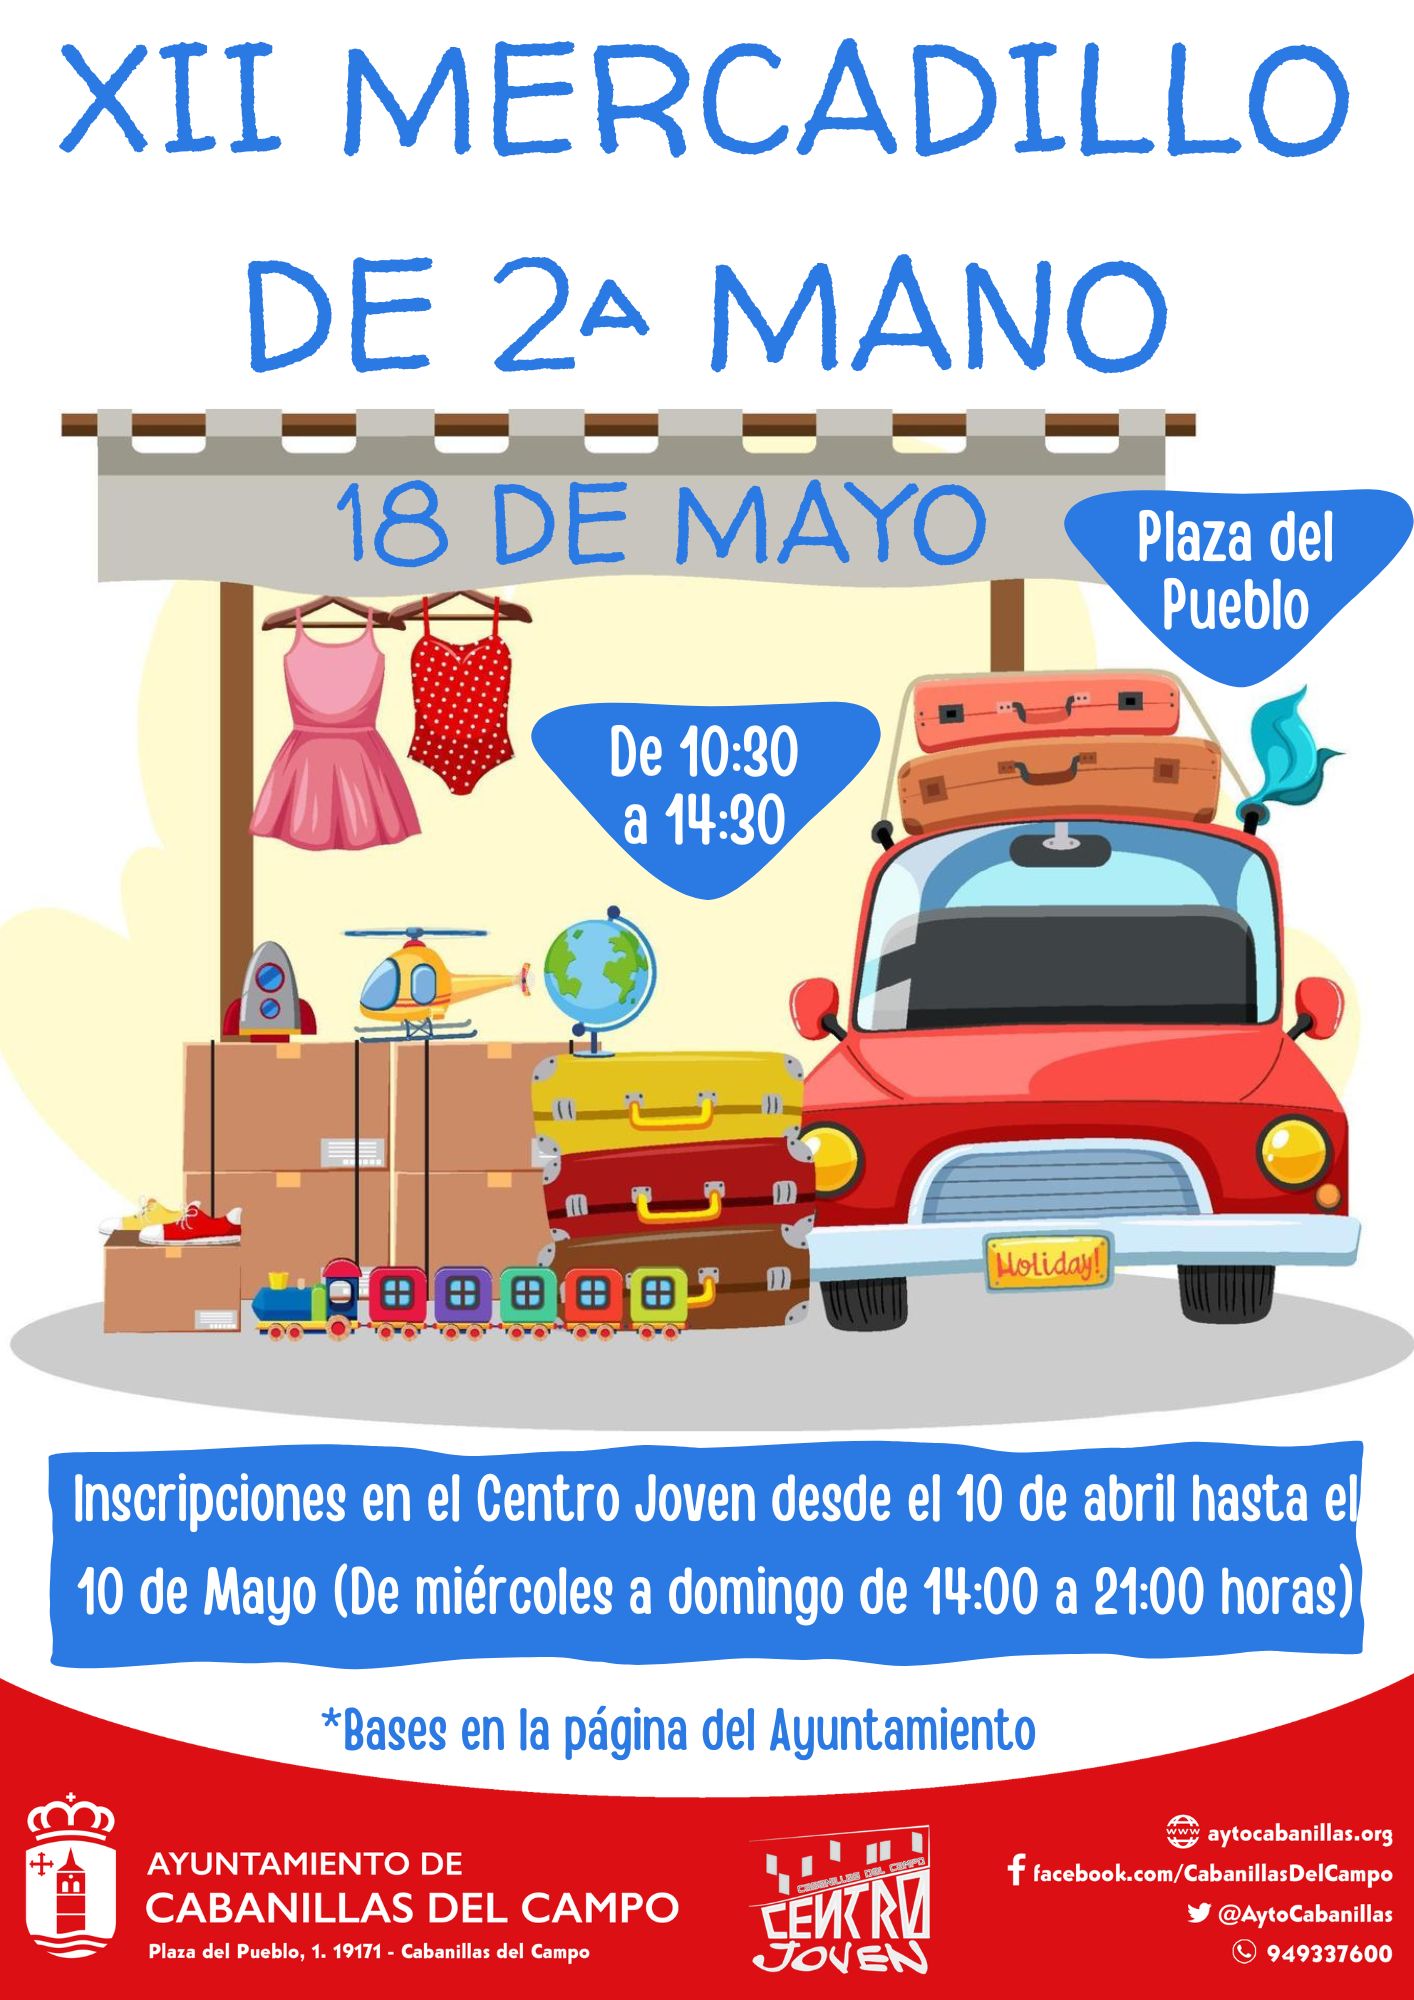 El Ayuntamiento de Cabanillas del Campo organiza la 12ª edición del Mercadillo de Segunda Mano en la Plaza del Pueblo. Inscripciones abiertas del 10 de abril al 10 de mayo en el Centro Joven.